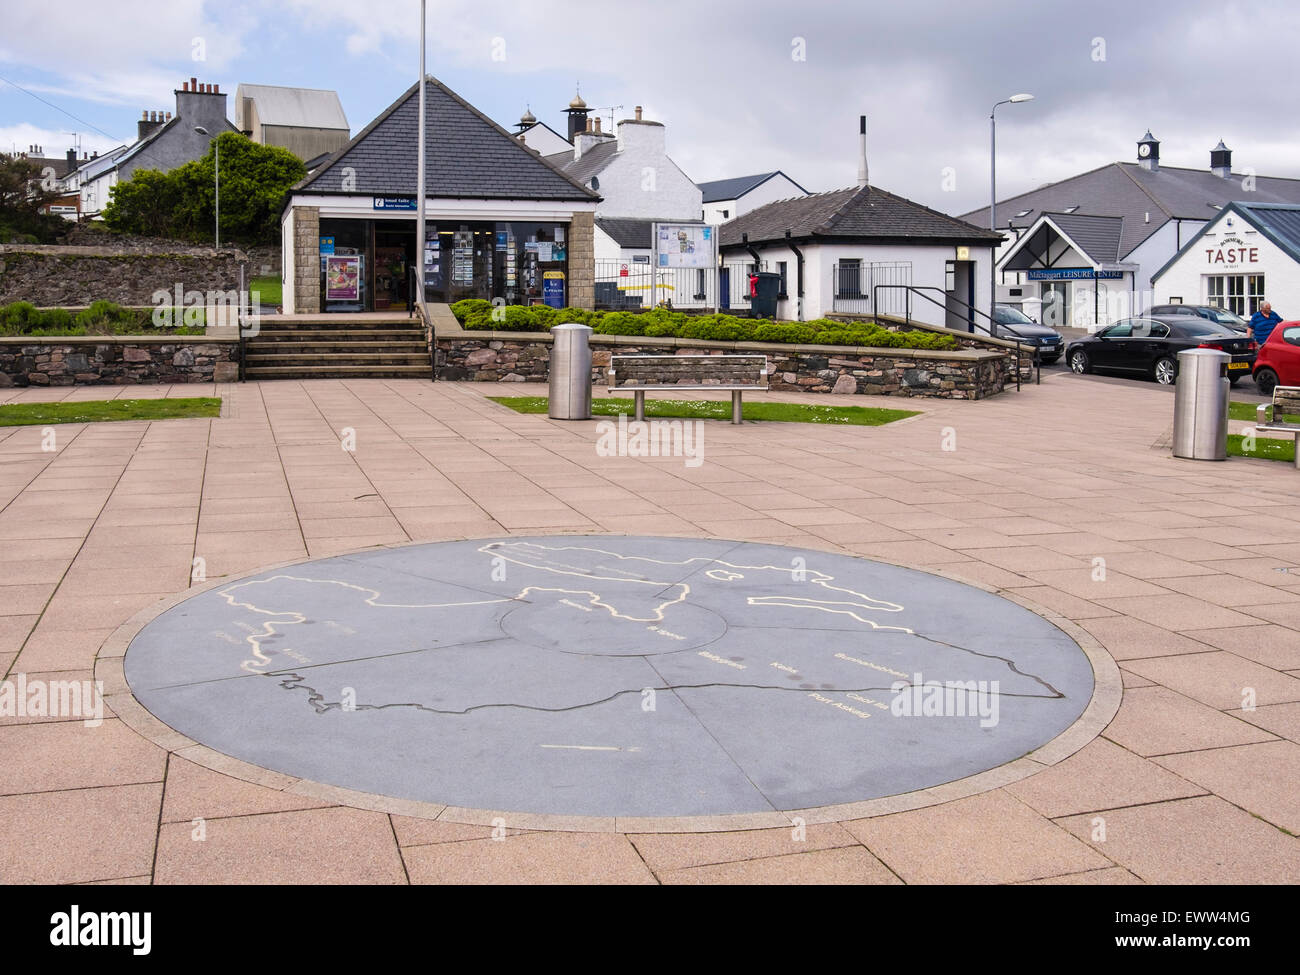 Gepflasterten Platz mit Inselkarte außerhalb Tourist Information Center in Bowmore, Isle of Islay, Inneren Hebriden, Western Isles, Schottland, UK, Großbritannien Stockfoto